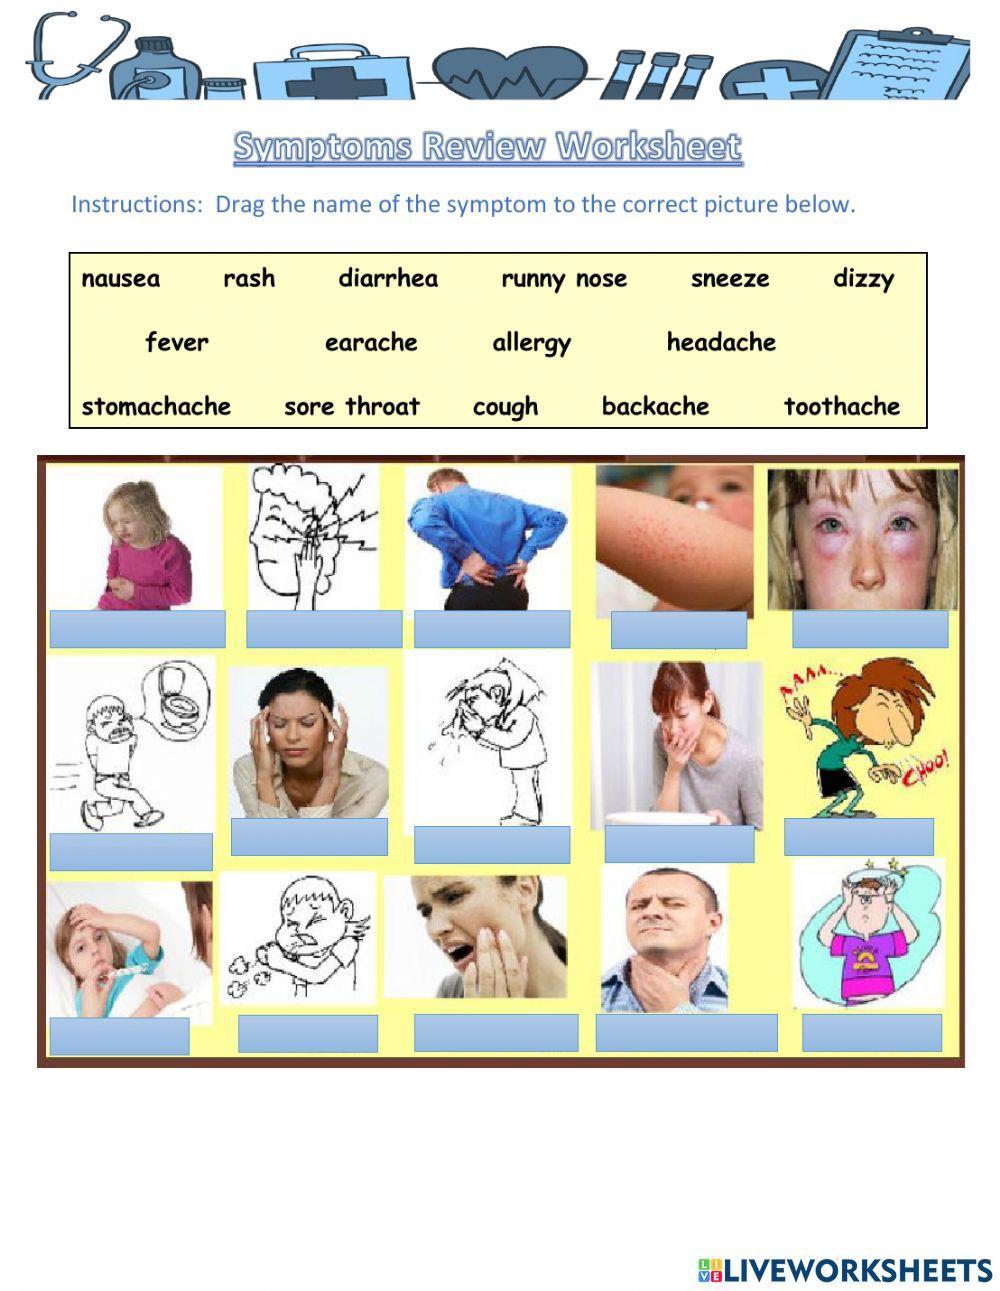 Symptoms Review Worksheet